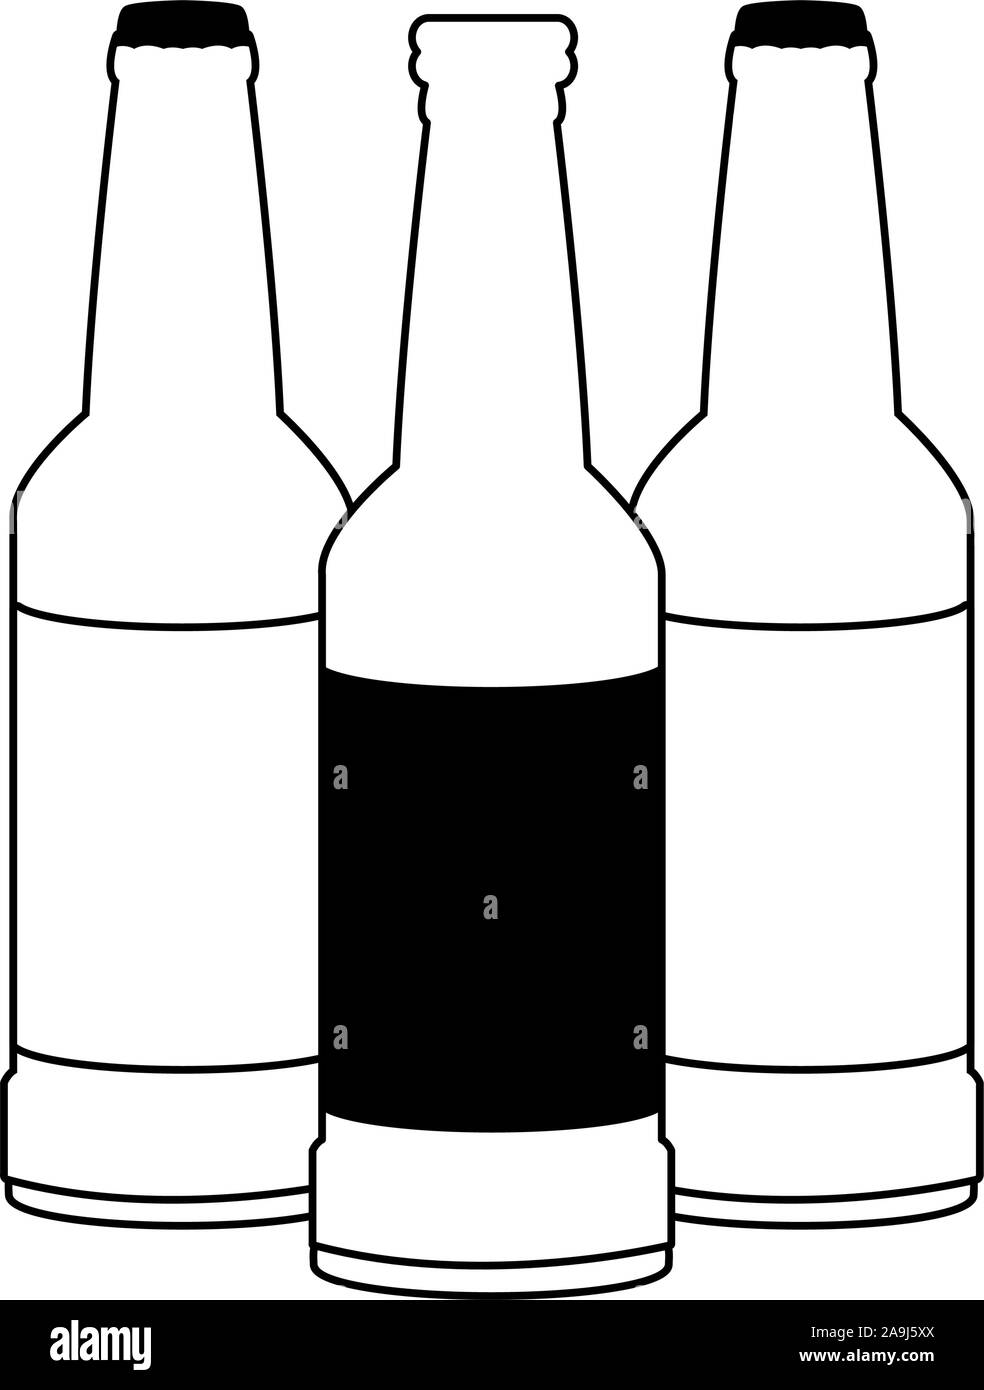 beer bottles icon, flat design Stock Vector